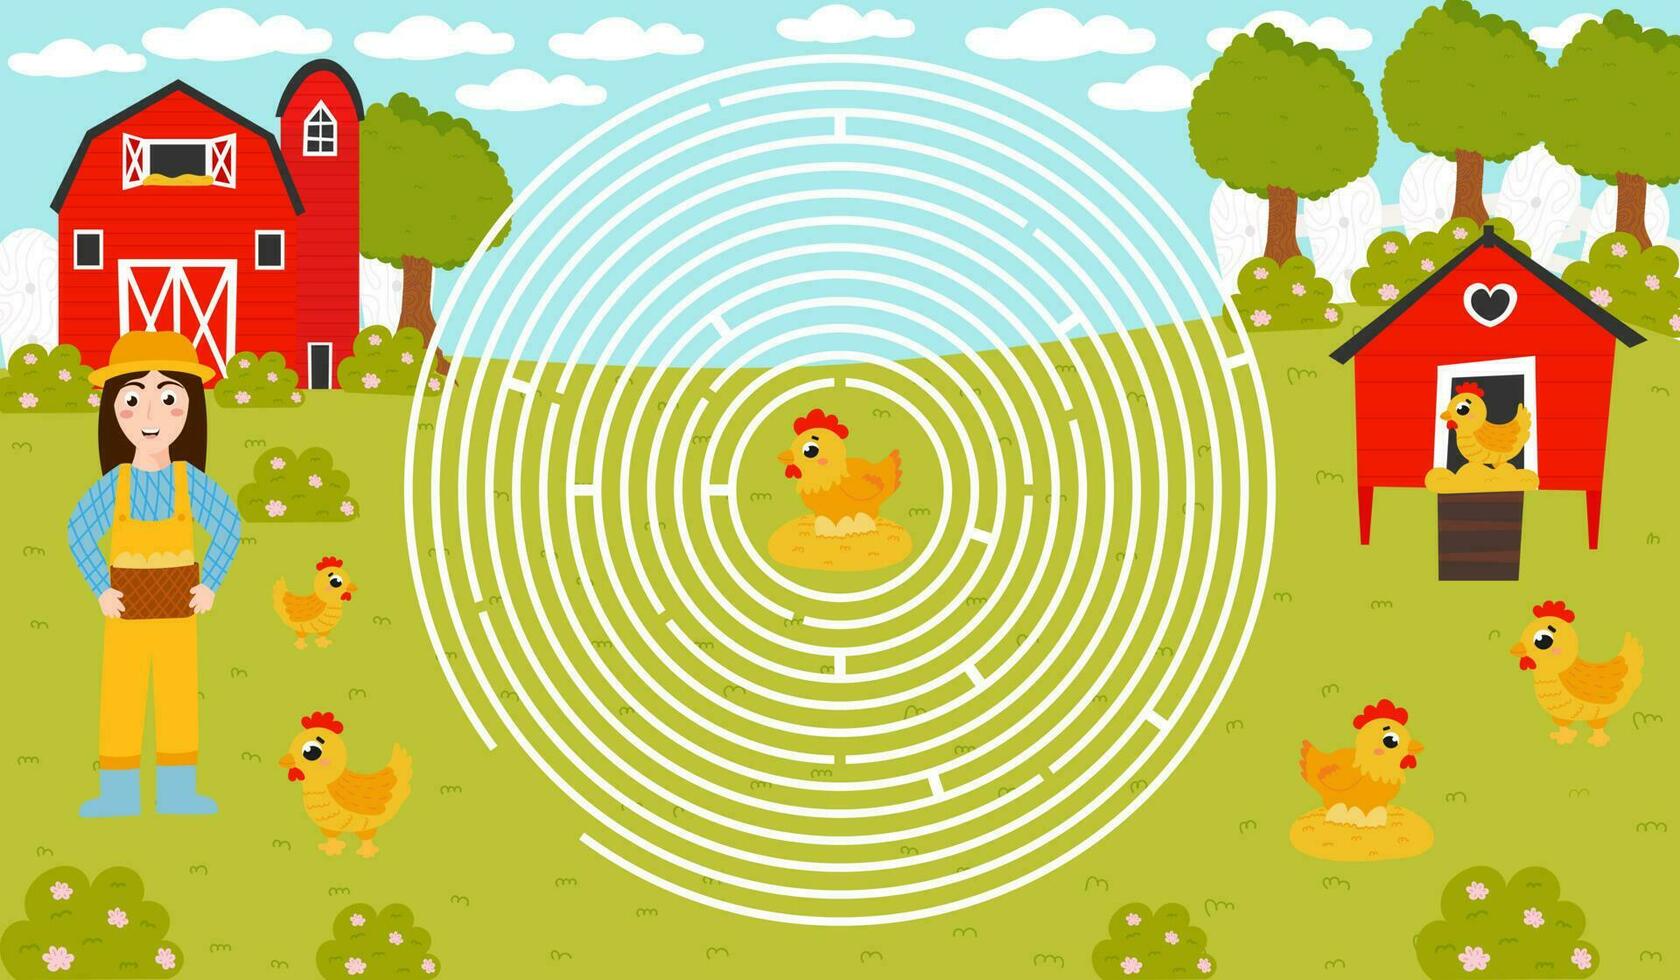 imprimível círculo Labirinto para crianças com menina segurando cesta com ovos, Socorro para encontrar certo caminho para galinha, agricultura temático labirinto para crianças dentro desenho animado estilo vetor